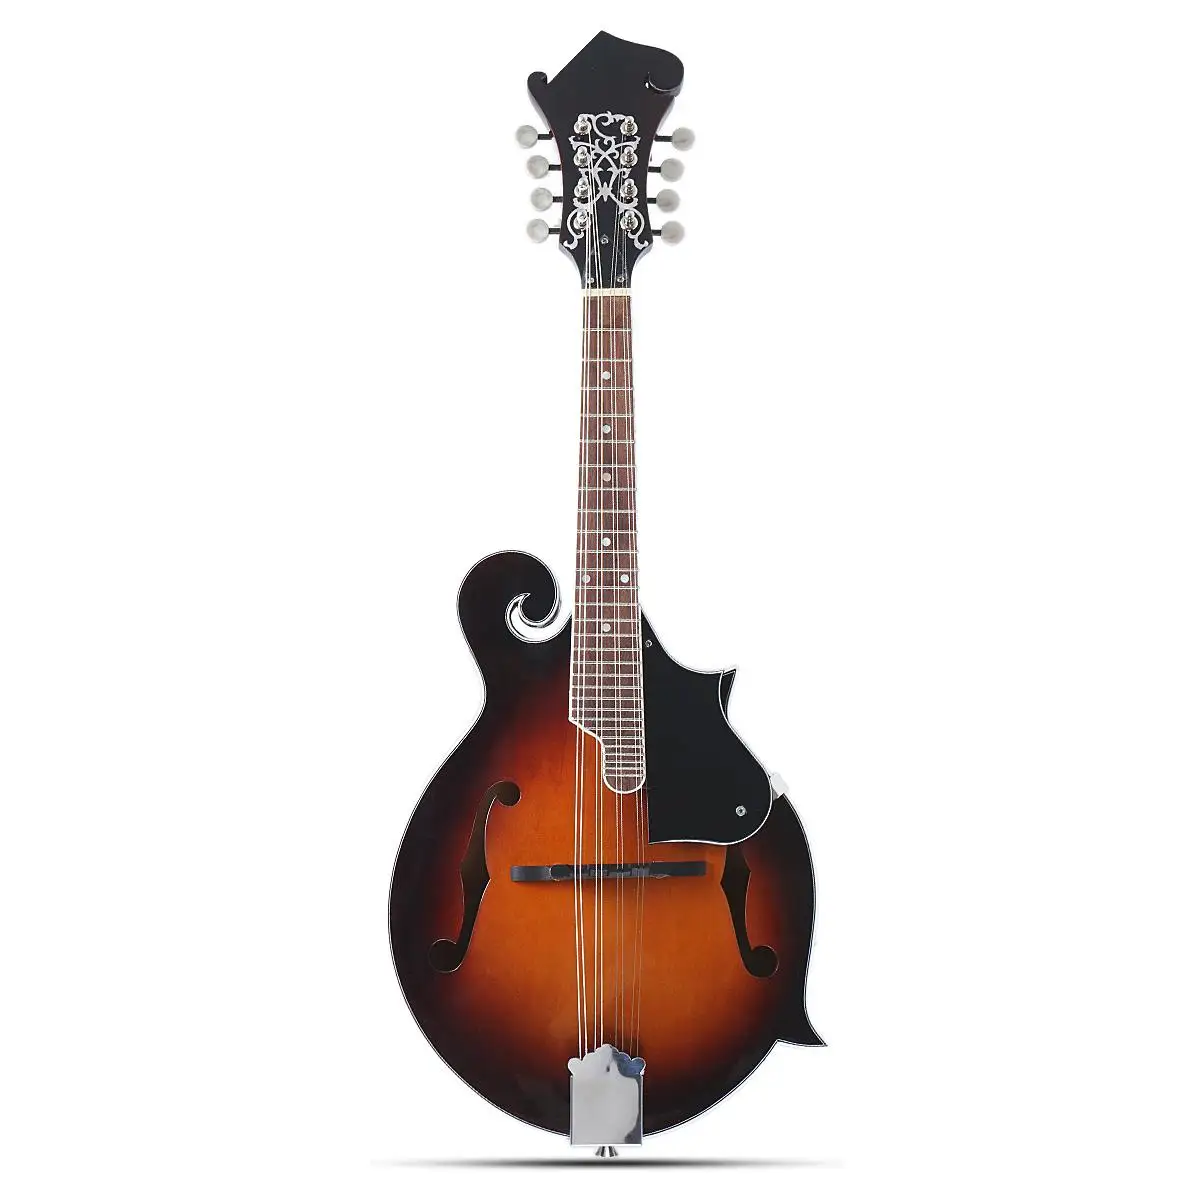 Senrhy 8-струна Sunburst mandolin Paulowni музыкальный инструмент с жестким мандолином чехол для струнных инструментов подарки для любимых